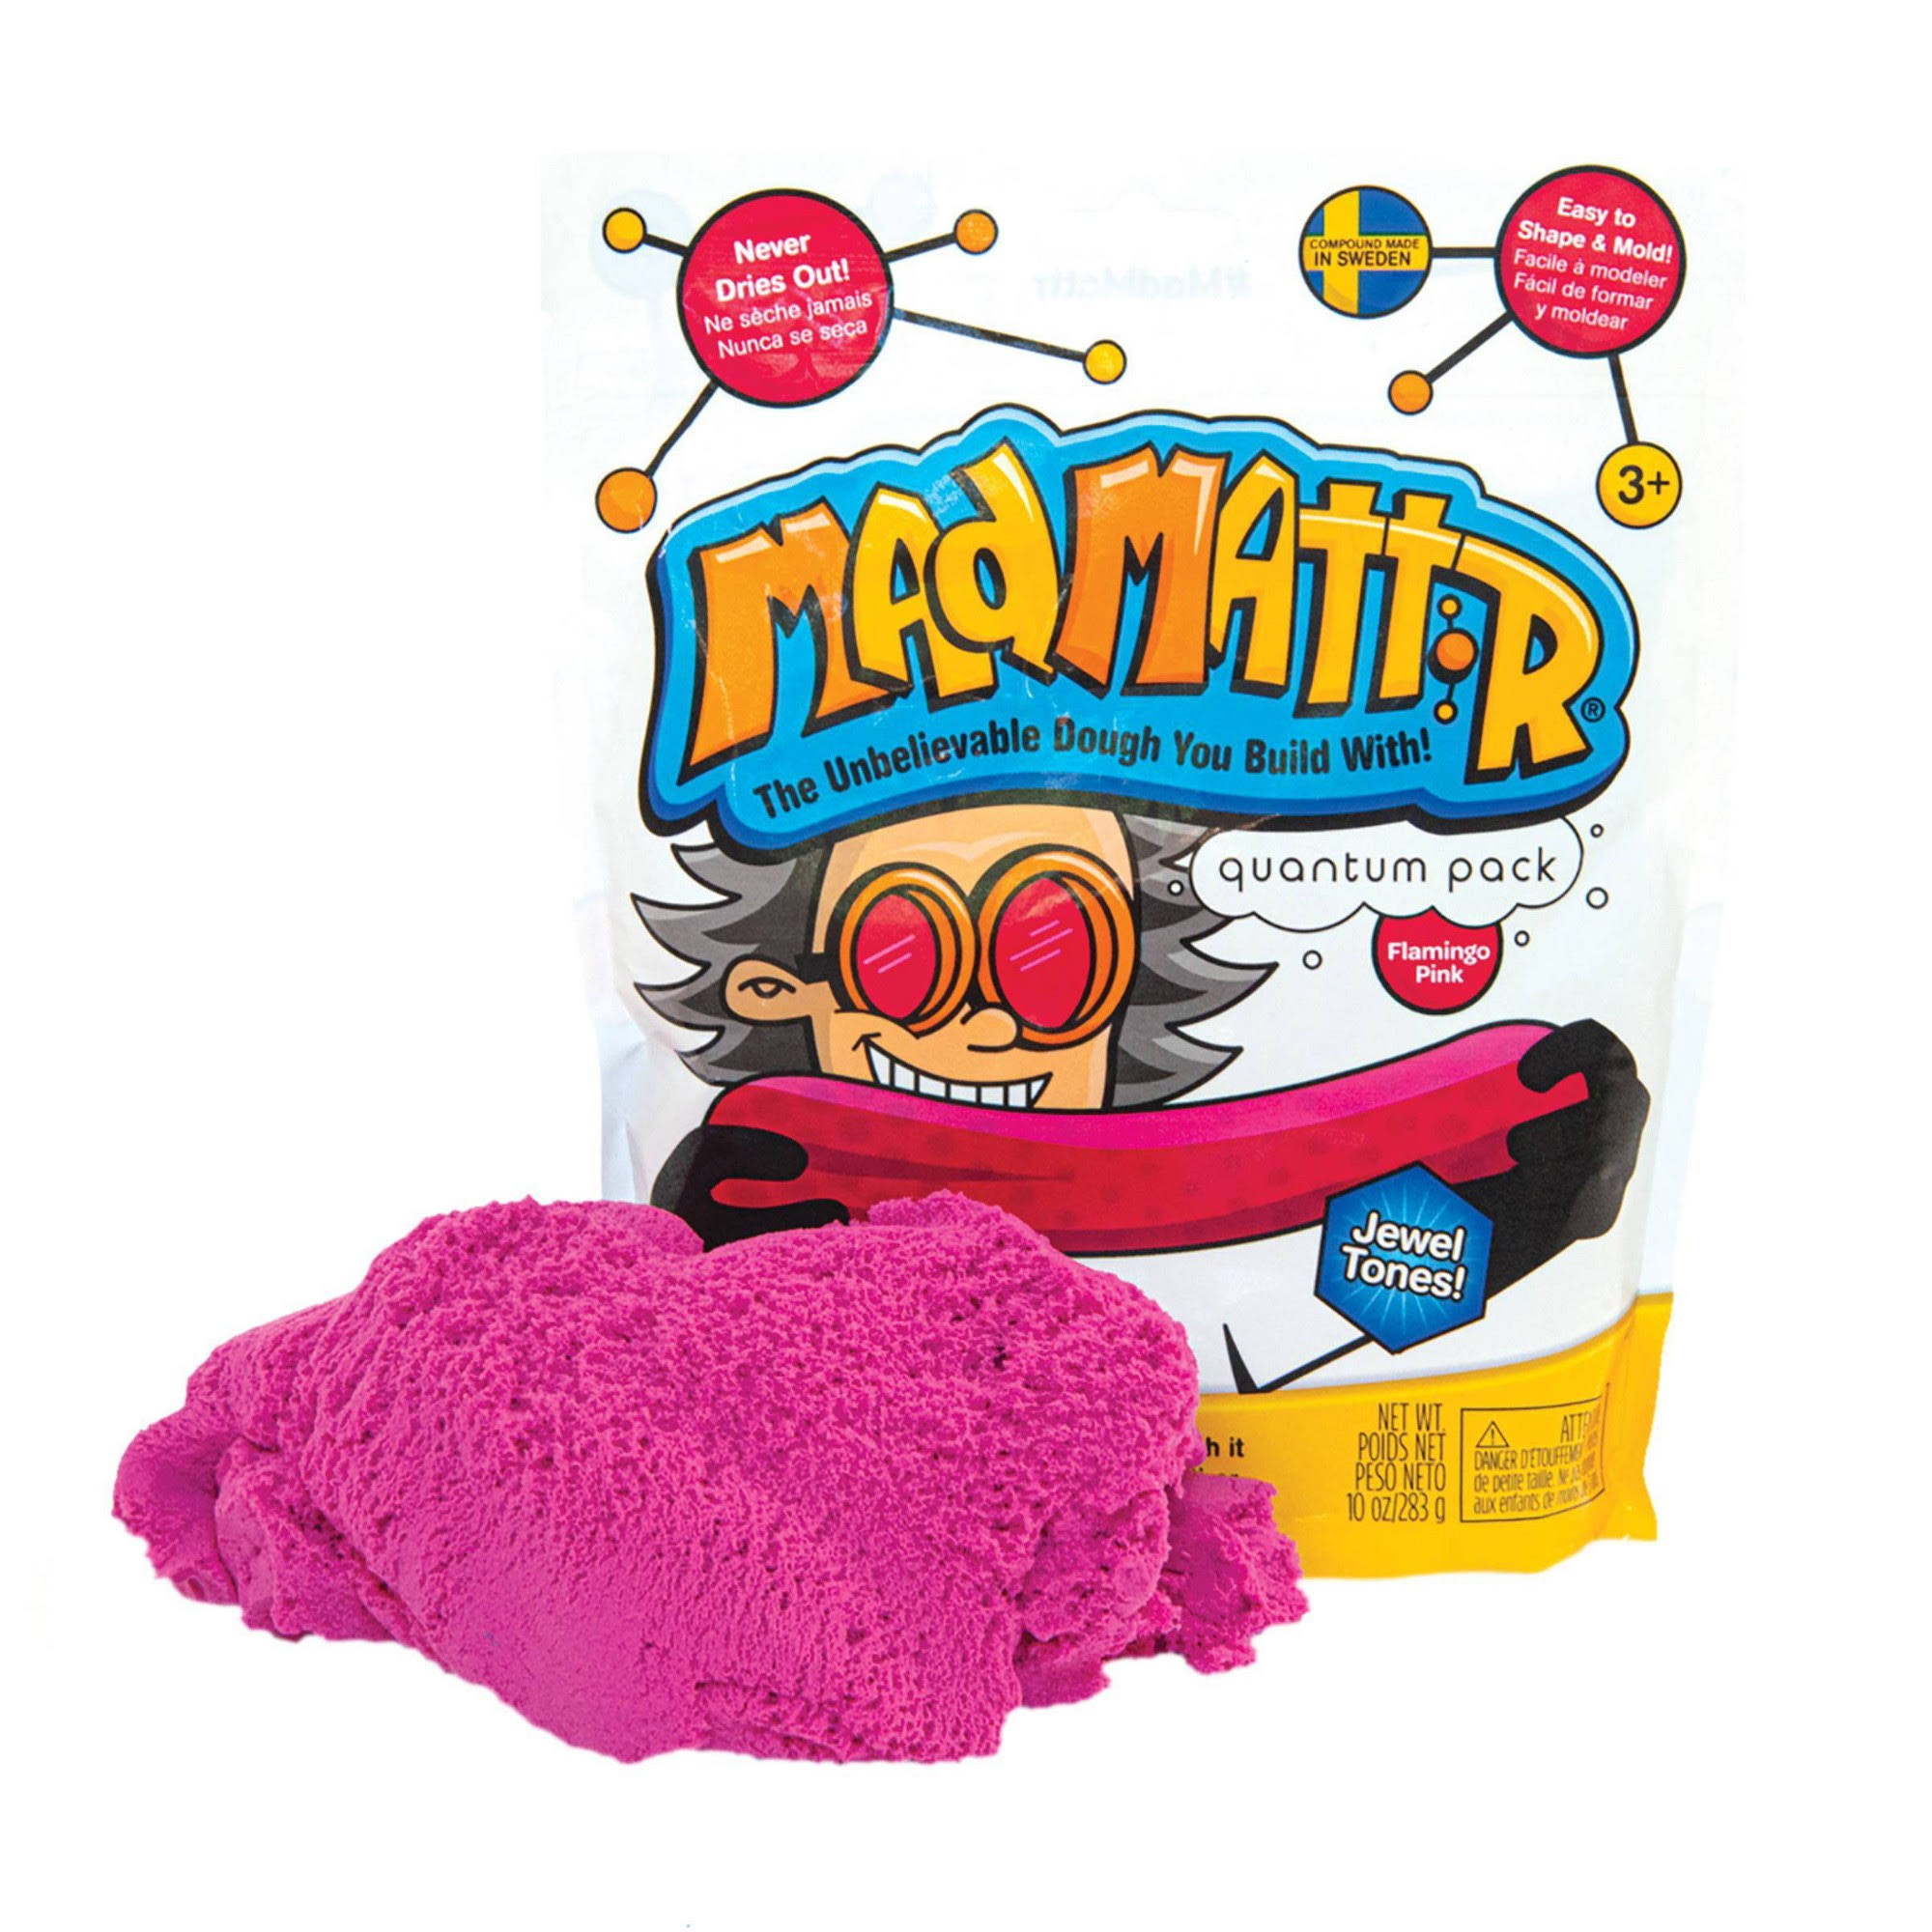 Mad Mattr Quantum Pack - 10oz Flamingo Pink